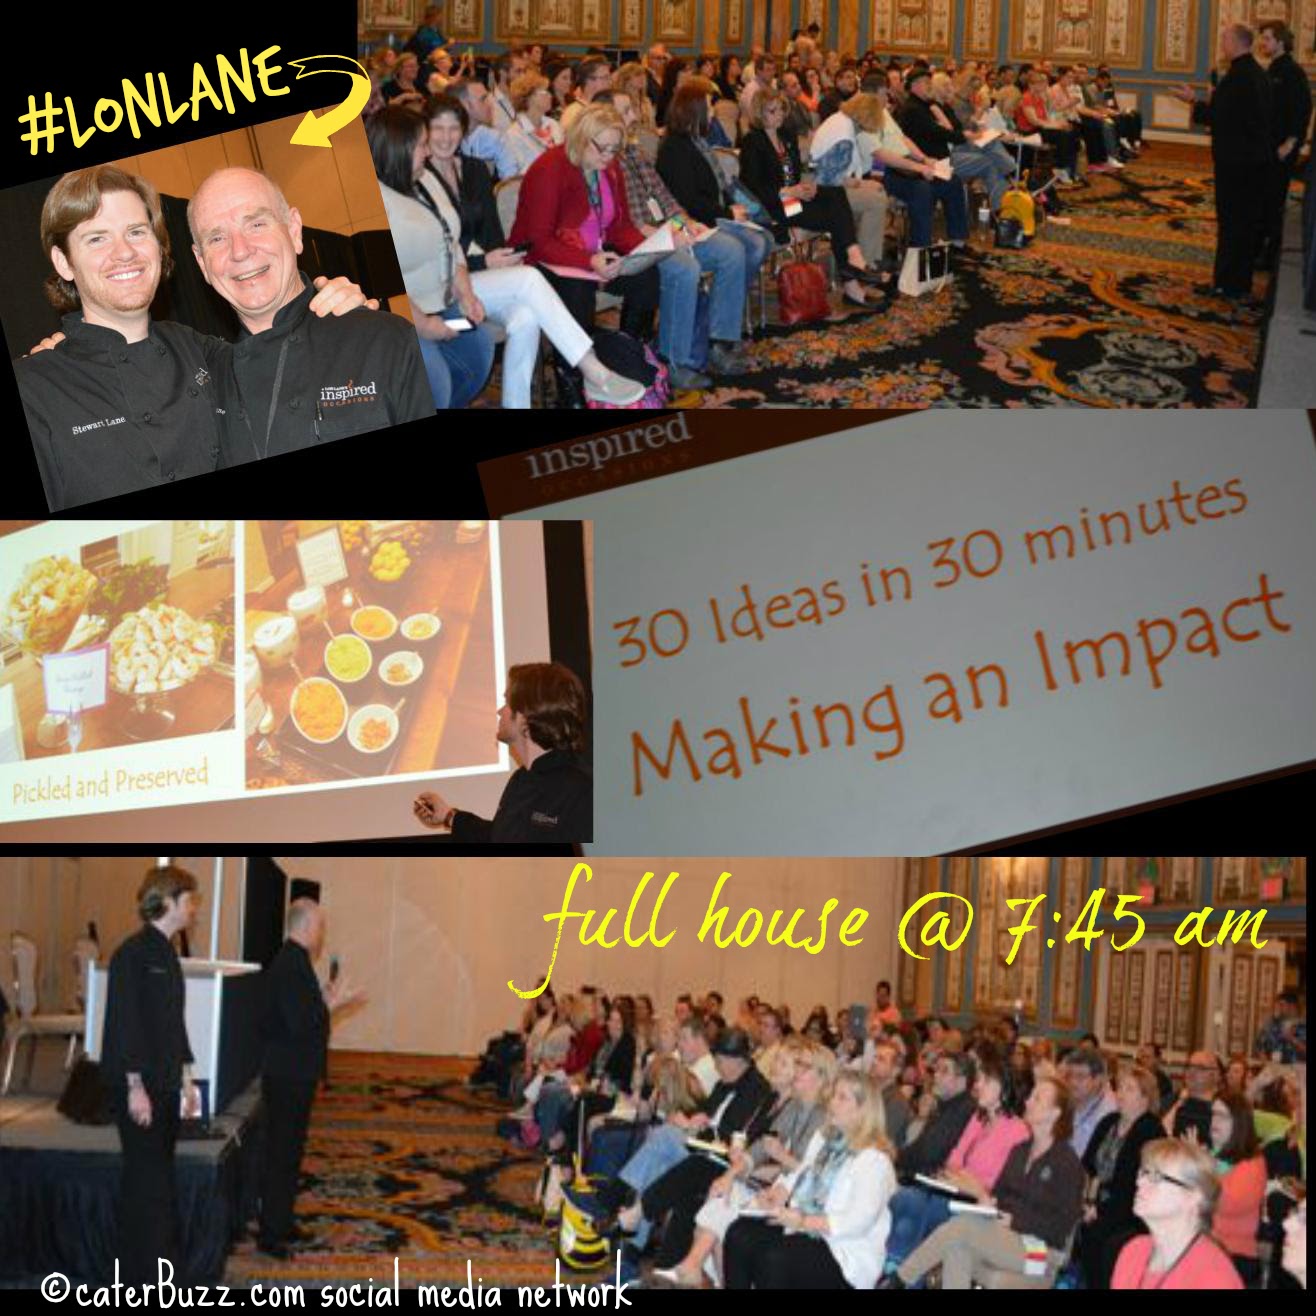 Lon Lane Inspired Occasions Team, Kansas City, Mo photo © caterBuzz.com social media network 